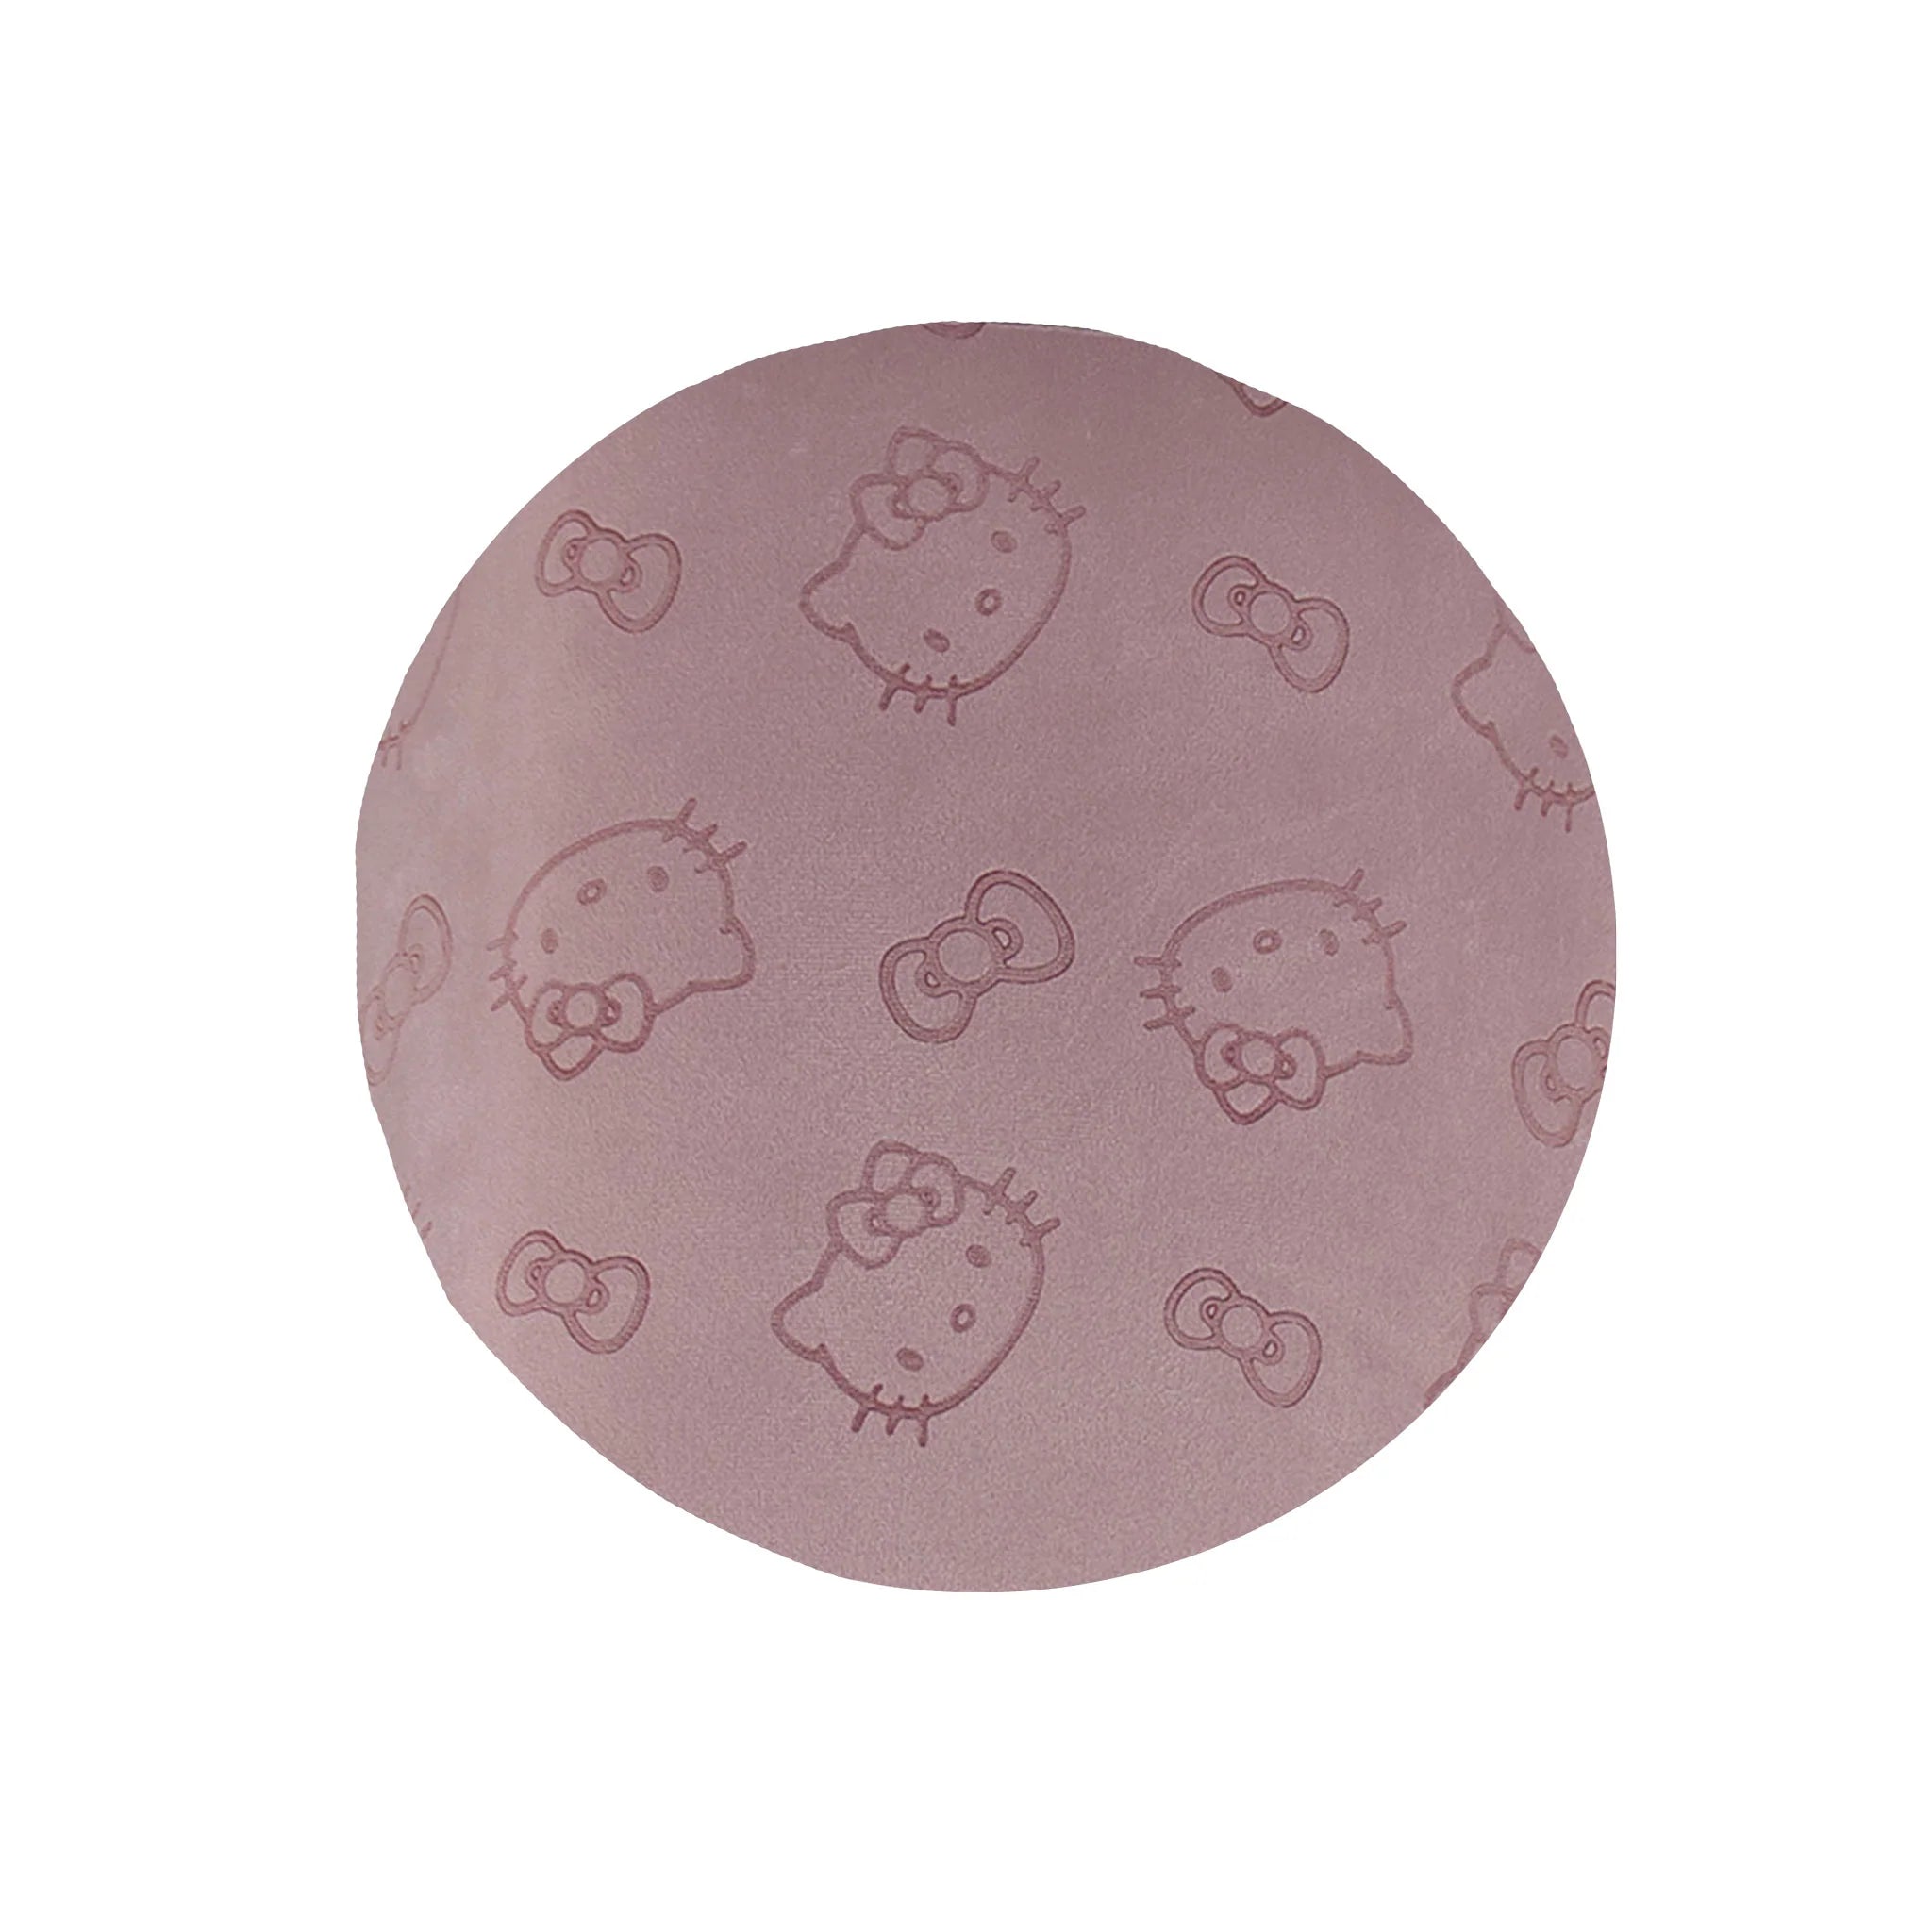 Impressions Vanity - Hello Kitty Round Vanity Ottoman Pink